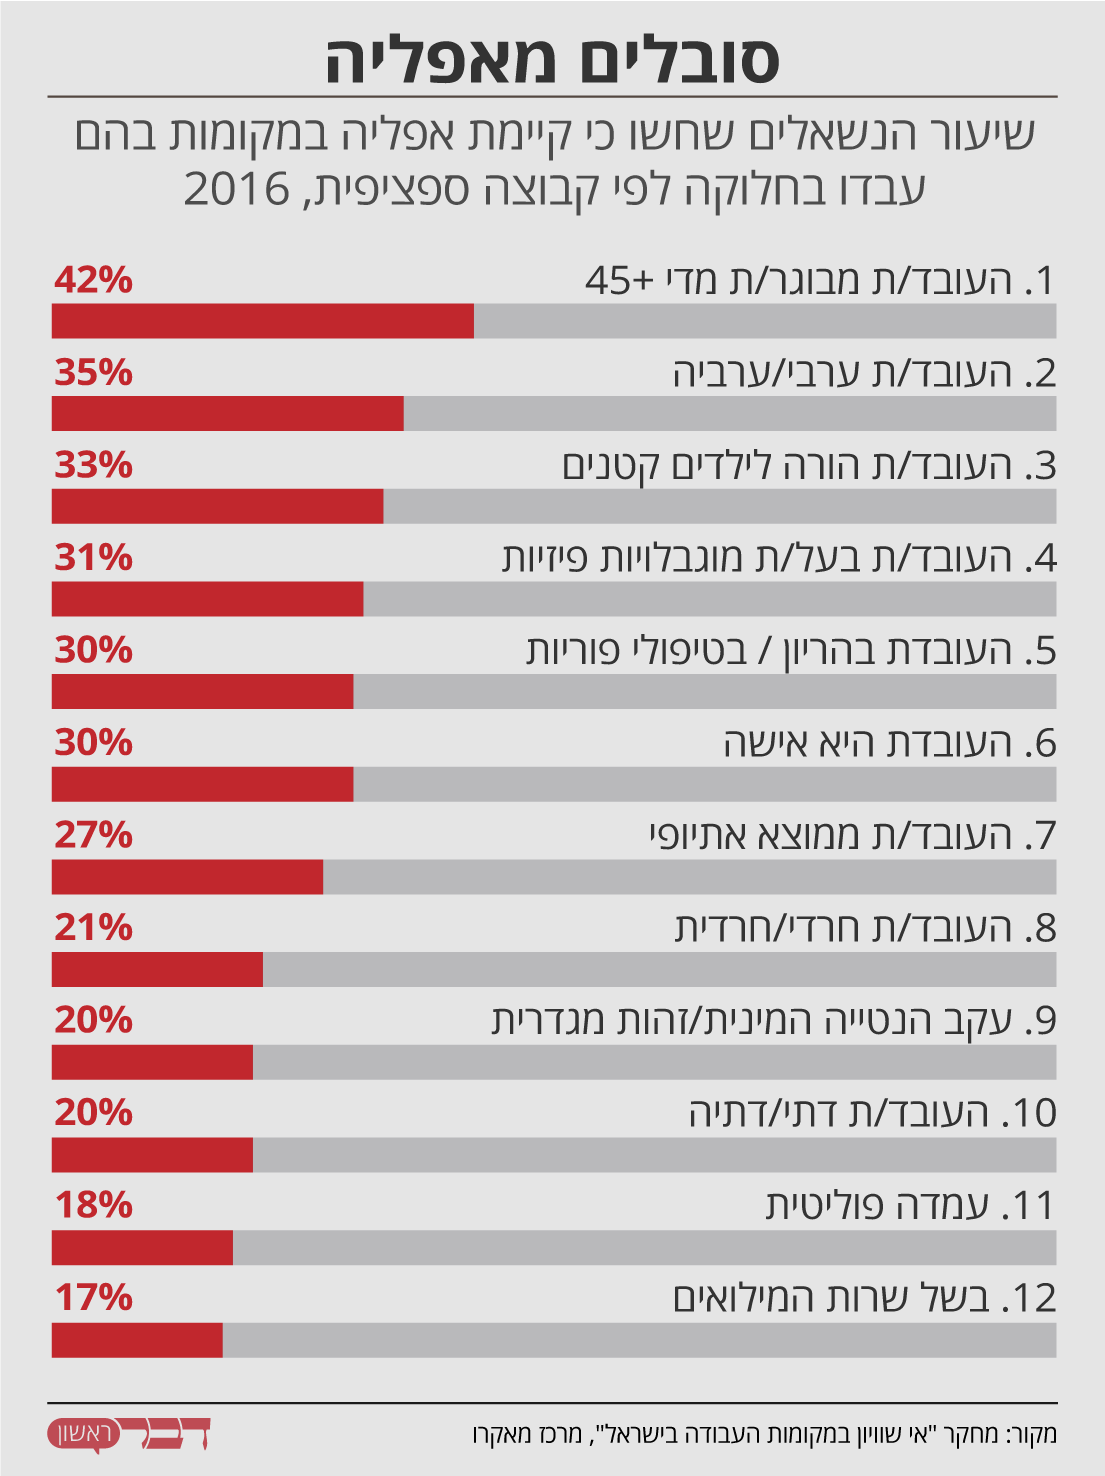 נתונים: מחקר &quot;אי שוויון במקומות העבודה בישראל&quot;, מרכז מאקרו. גרפיקה: דבר ראשון